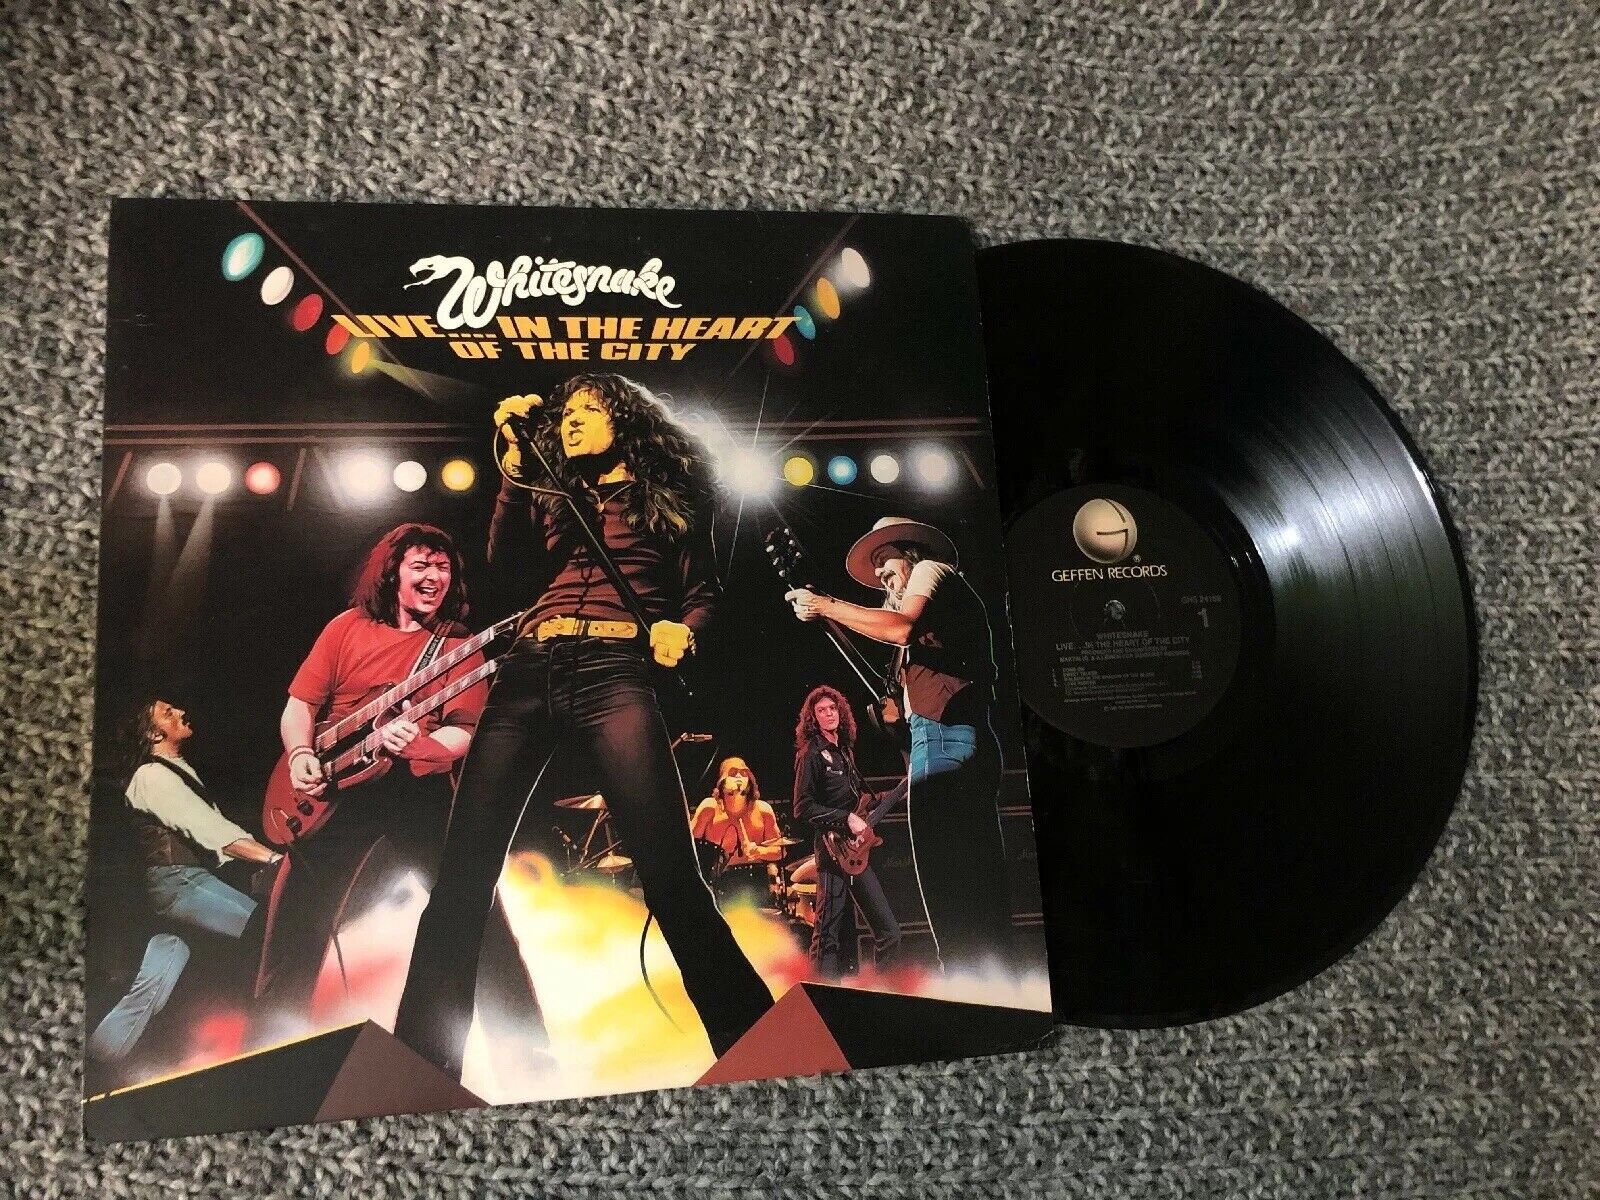 Whitesnake Lp Live In The Heart 1980 V. G Original Press